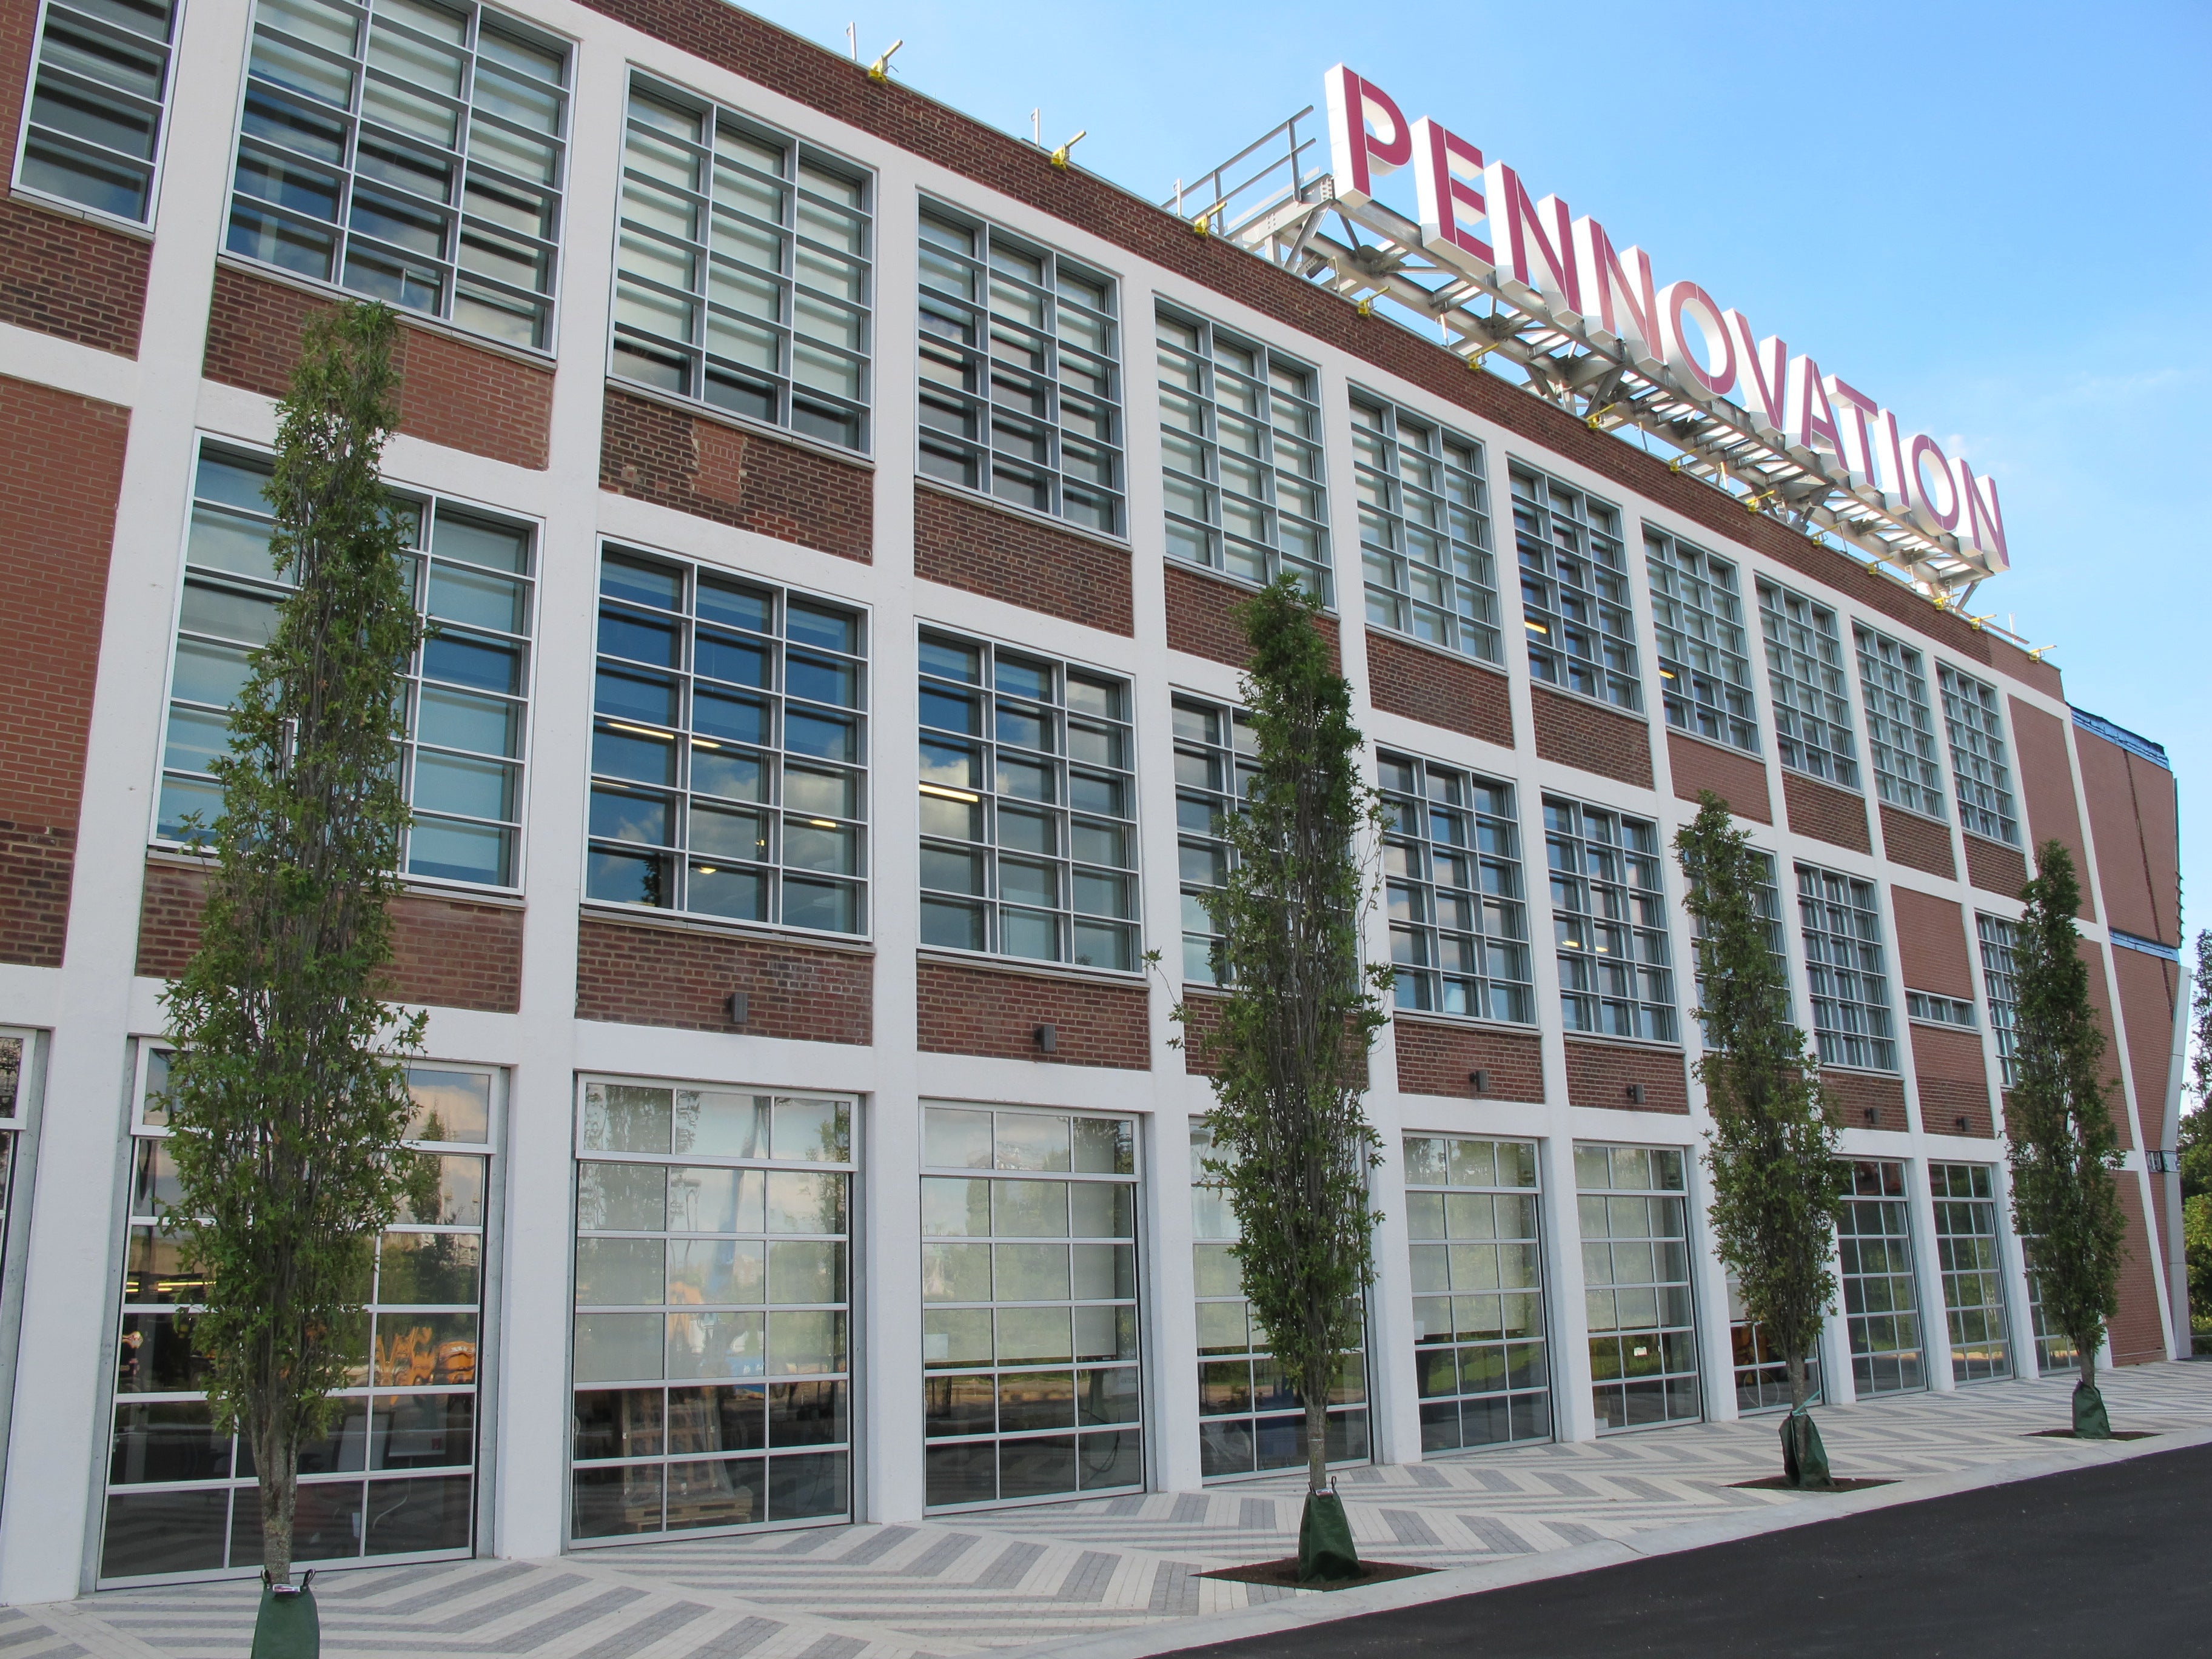 Pennovation Center, August 2016